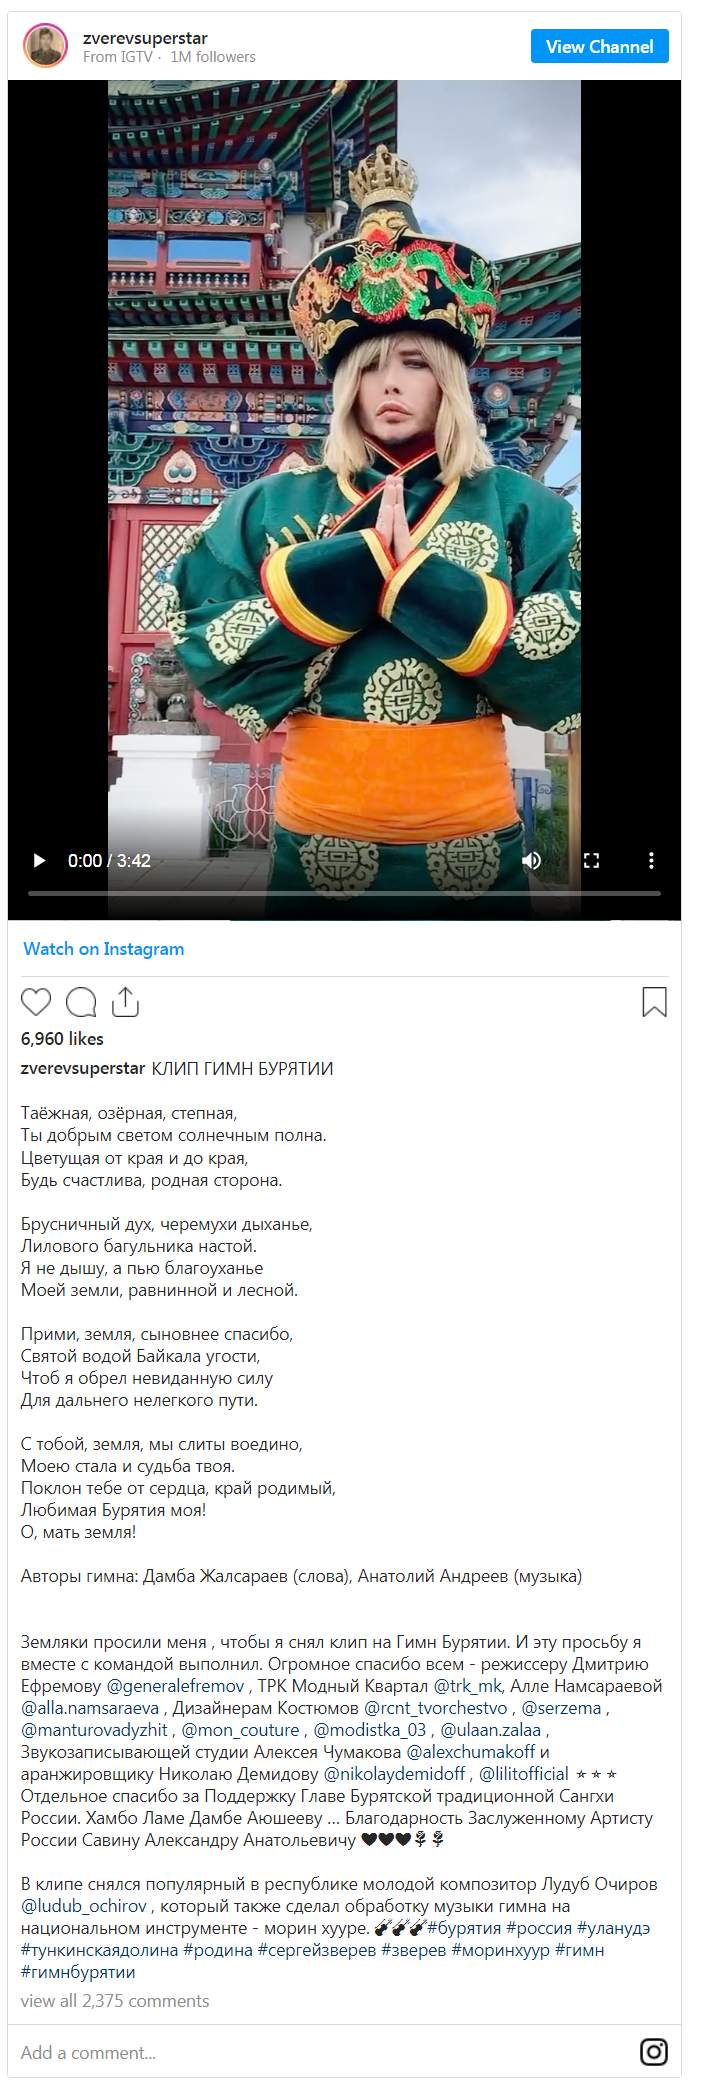 Скриншот из Инстаграма Сергея Зверева